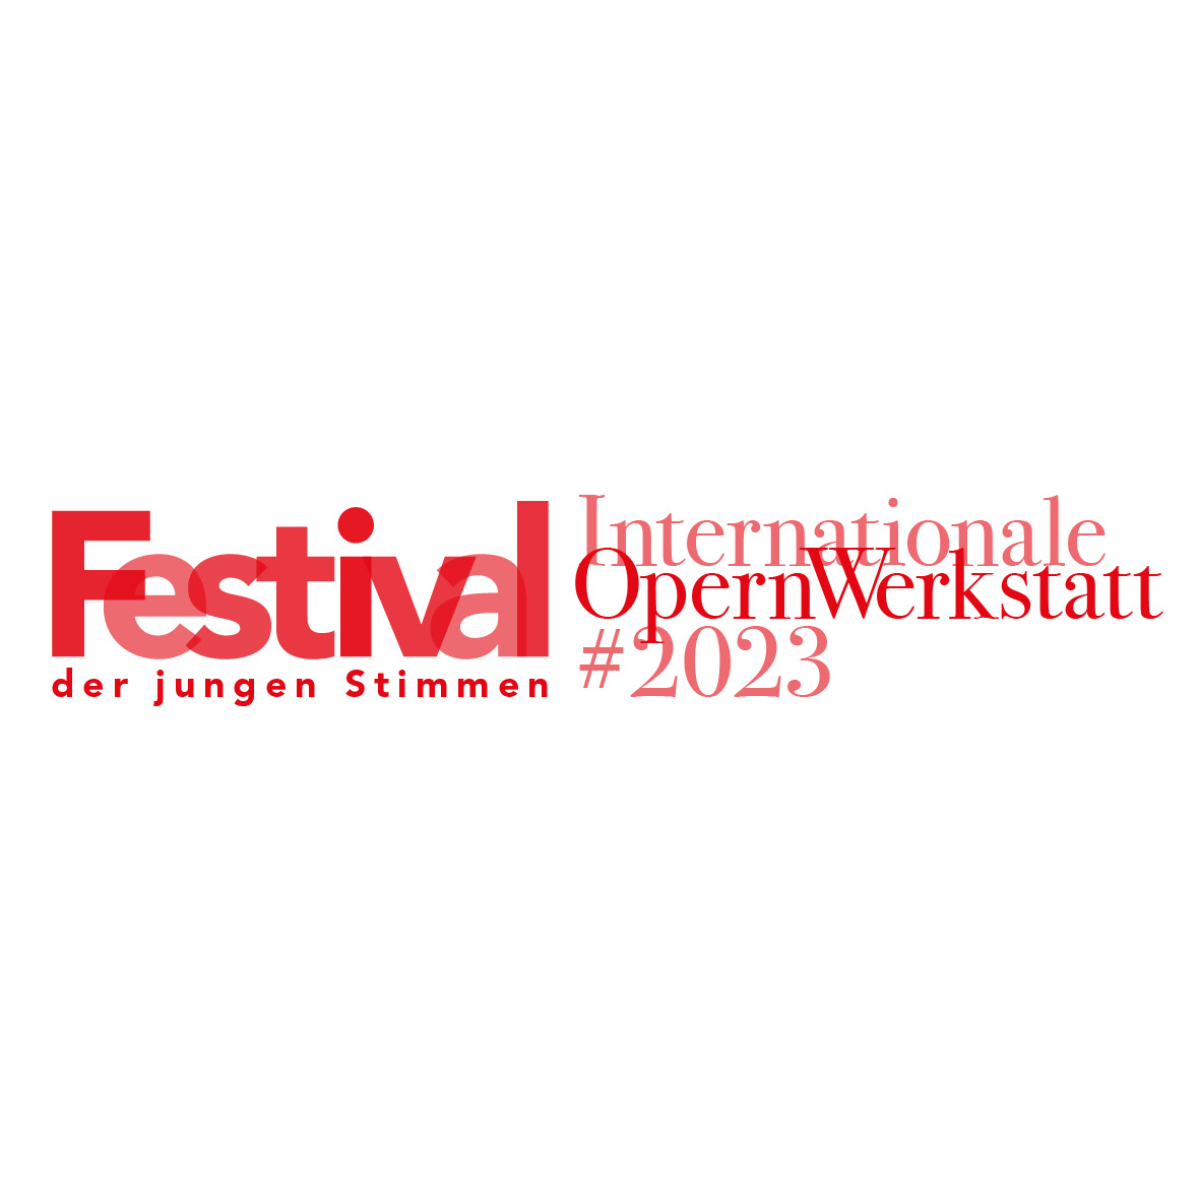 Festival der jungen Stimmen 2023; Internationale Opernwerkstatt